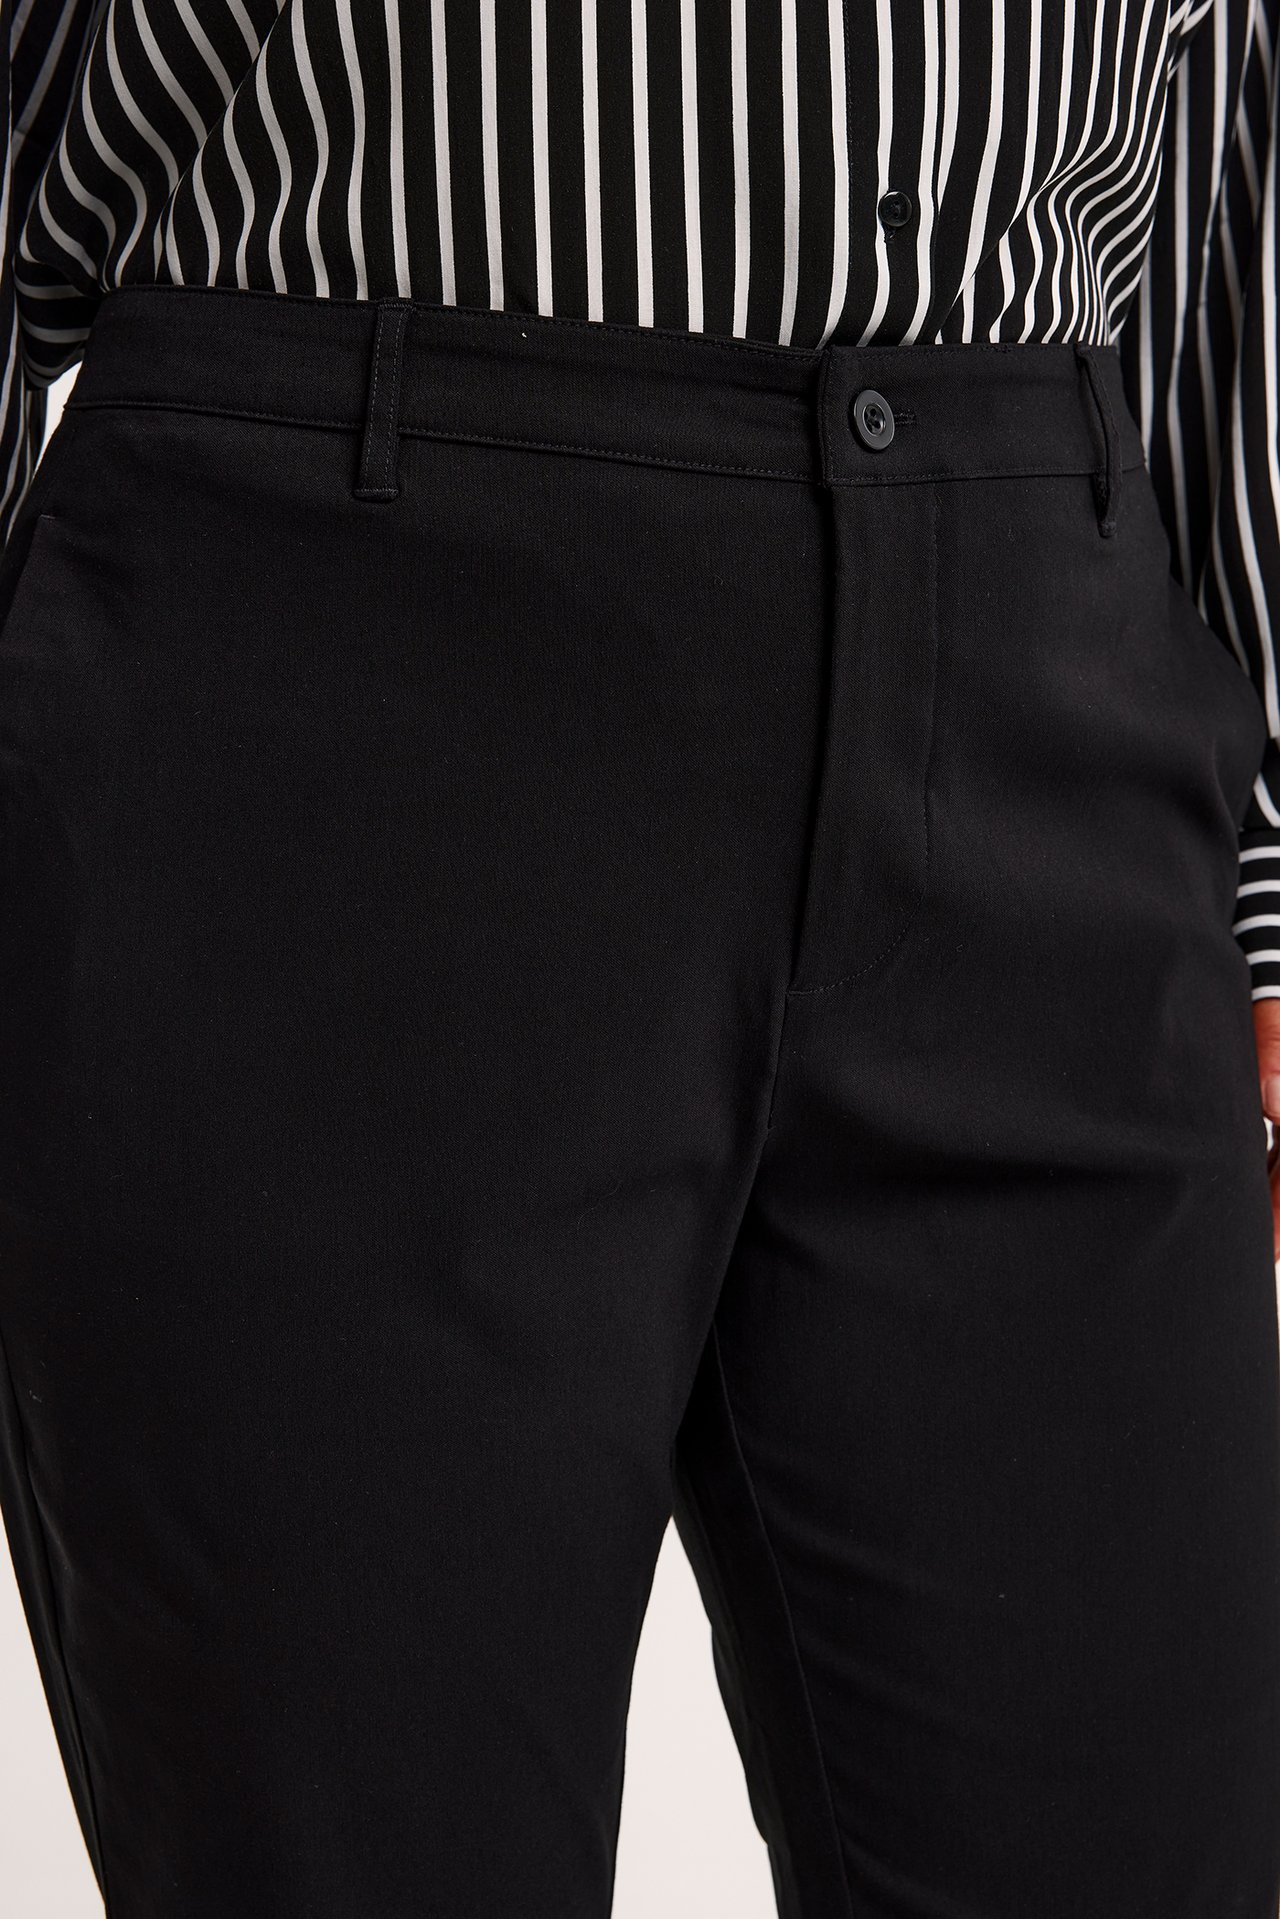 Spodnie garniturowe typu dzwony - Czarne - 3